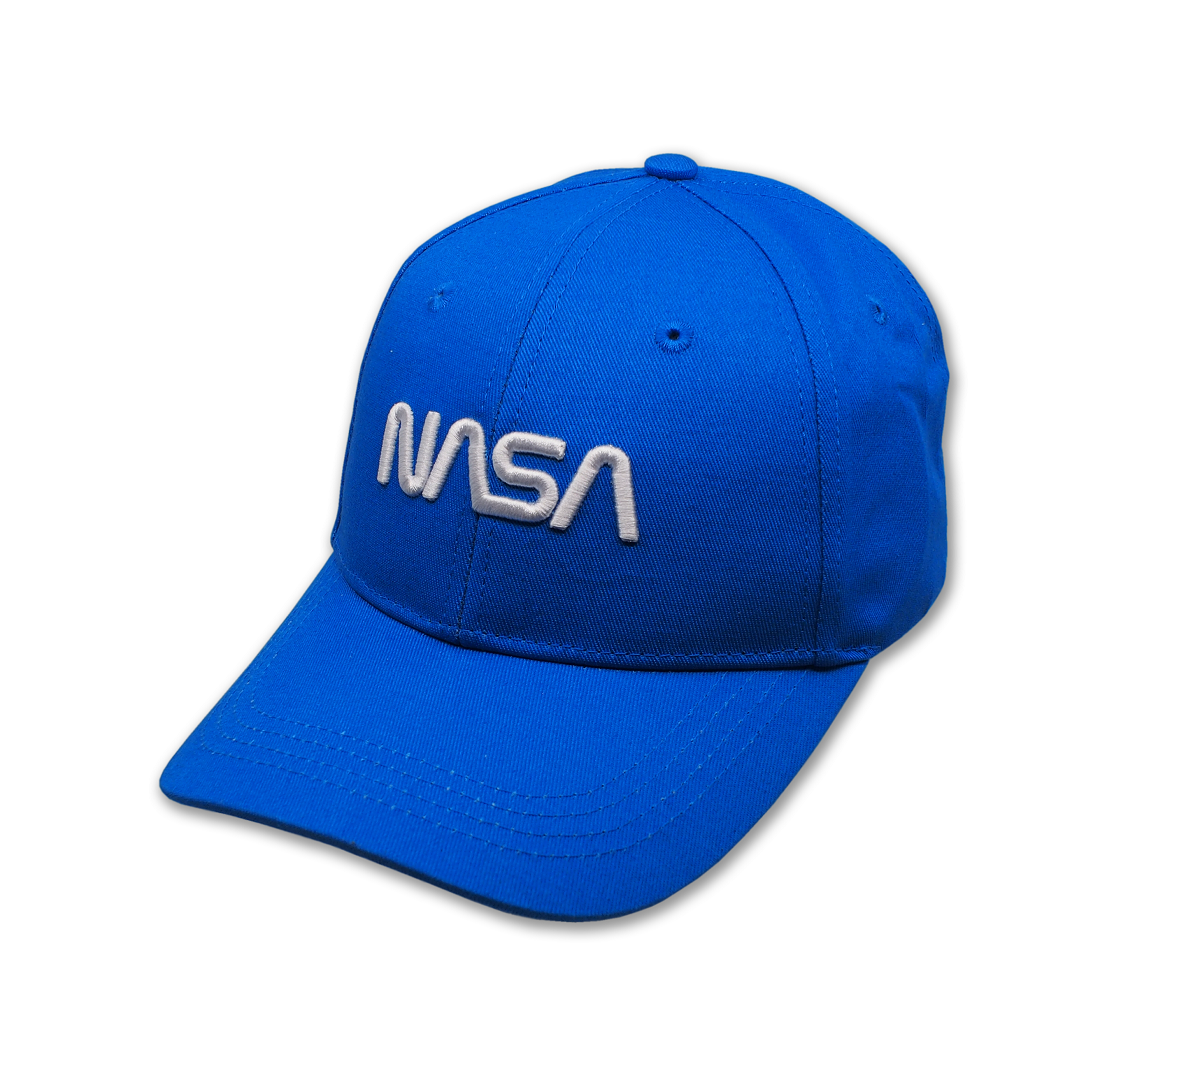 Casquette NASA bleu - Military Megastore